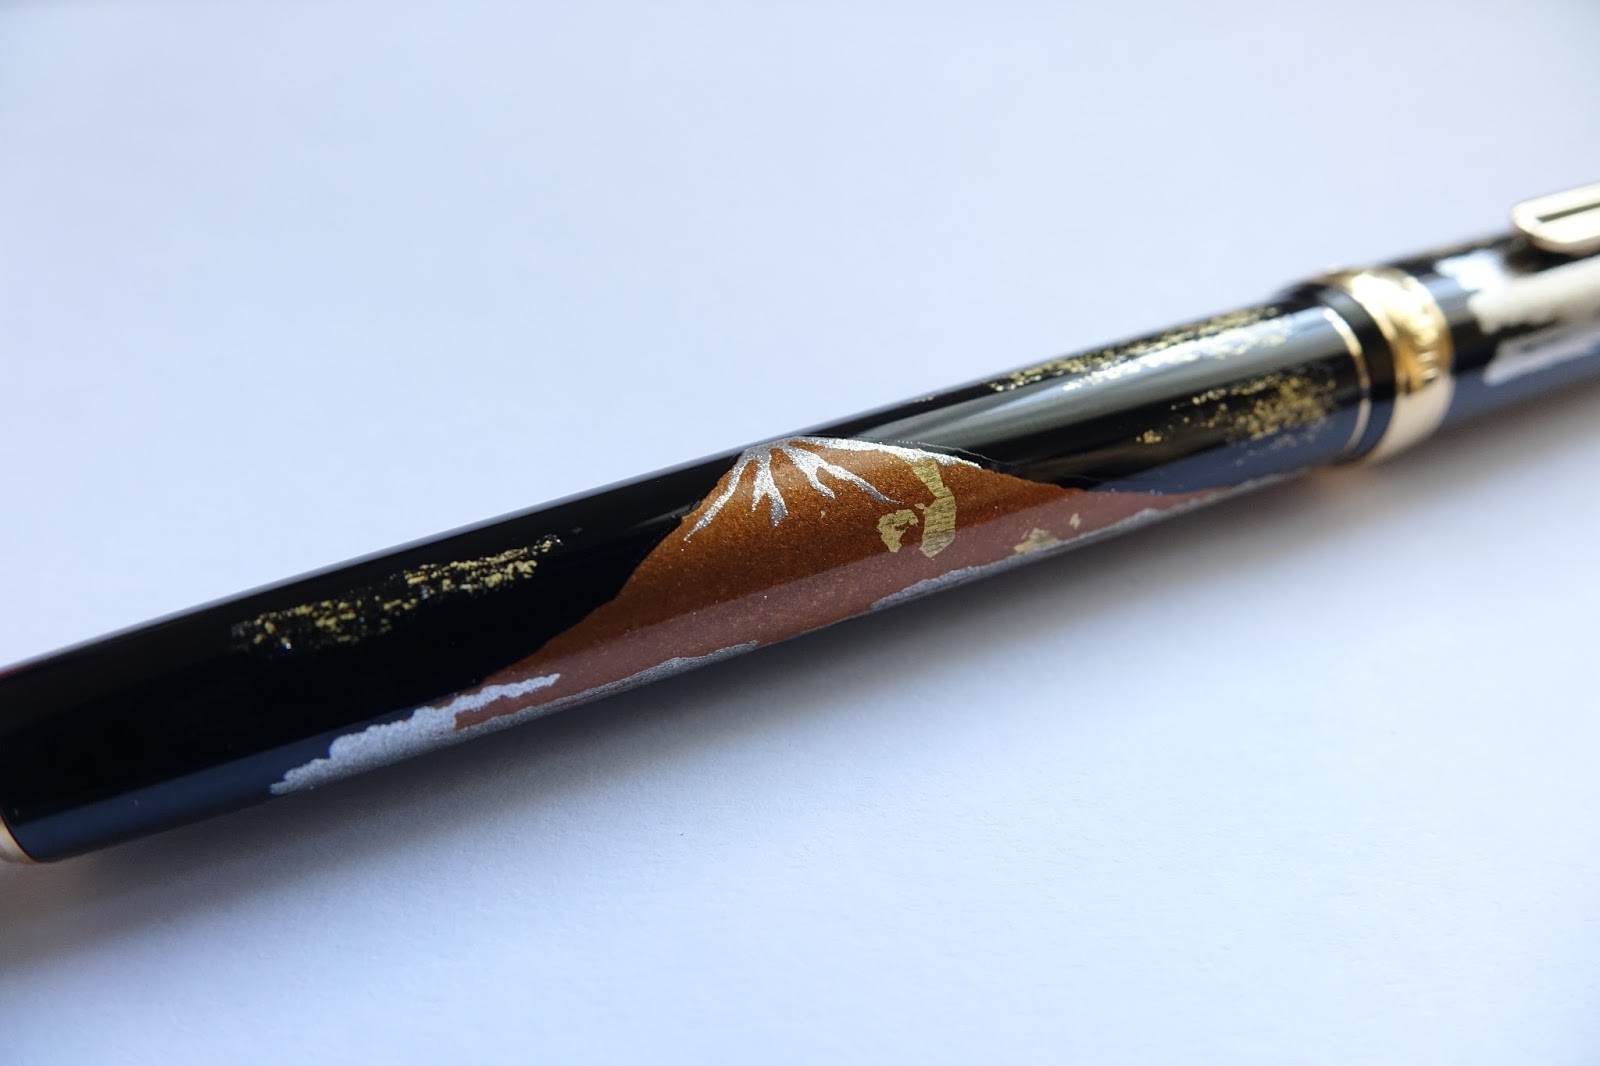 New Platinum Matsu-Tora Gold Leaf Pen Arriving In June